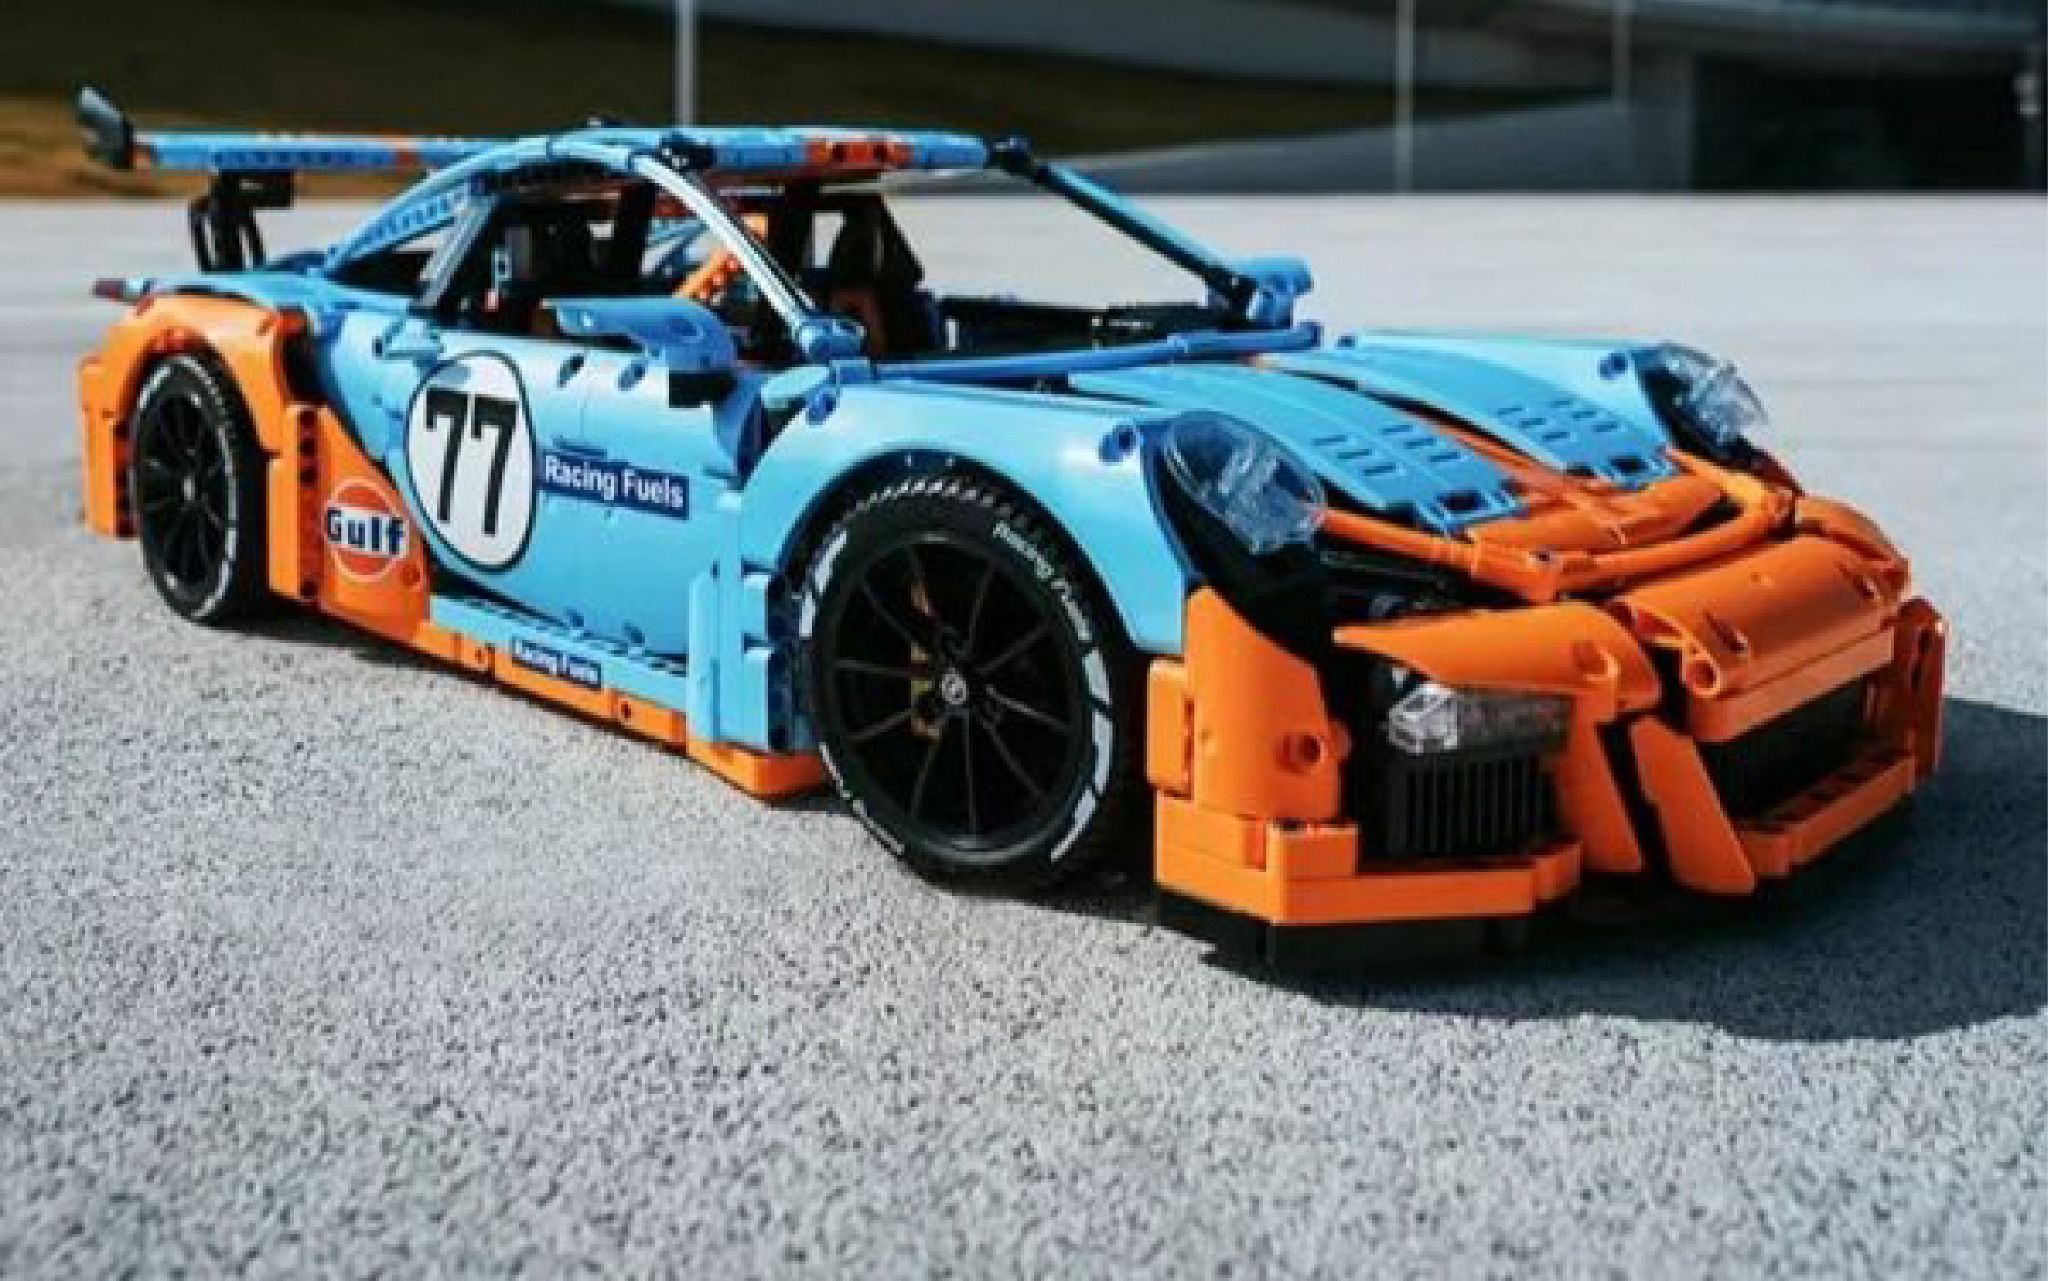  Mô hình xe ô tô lắp ghép Porsche 911 Gt3 RS Gulf racing 2703 pcs tỉ lệ 1:8 non lego LG025 